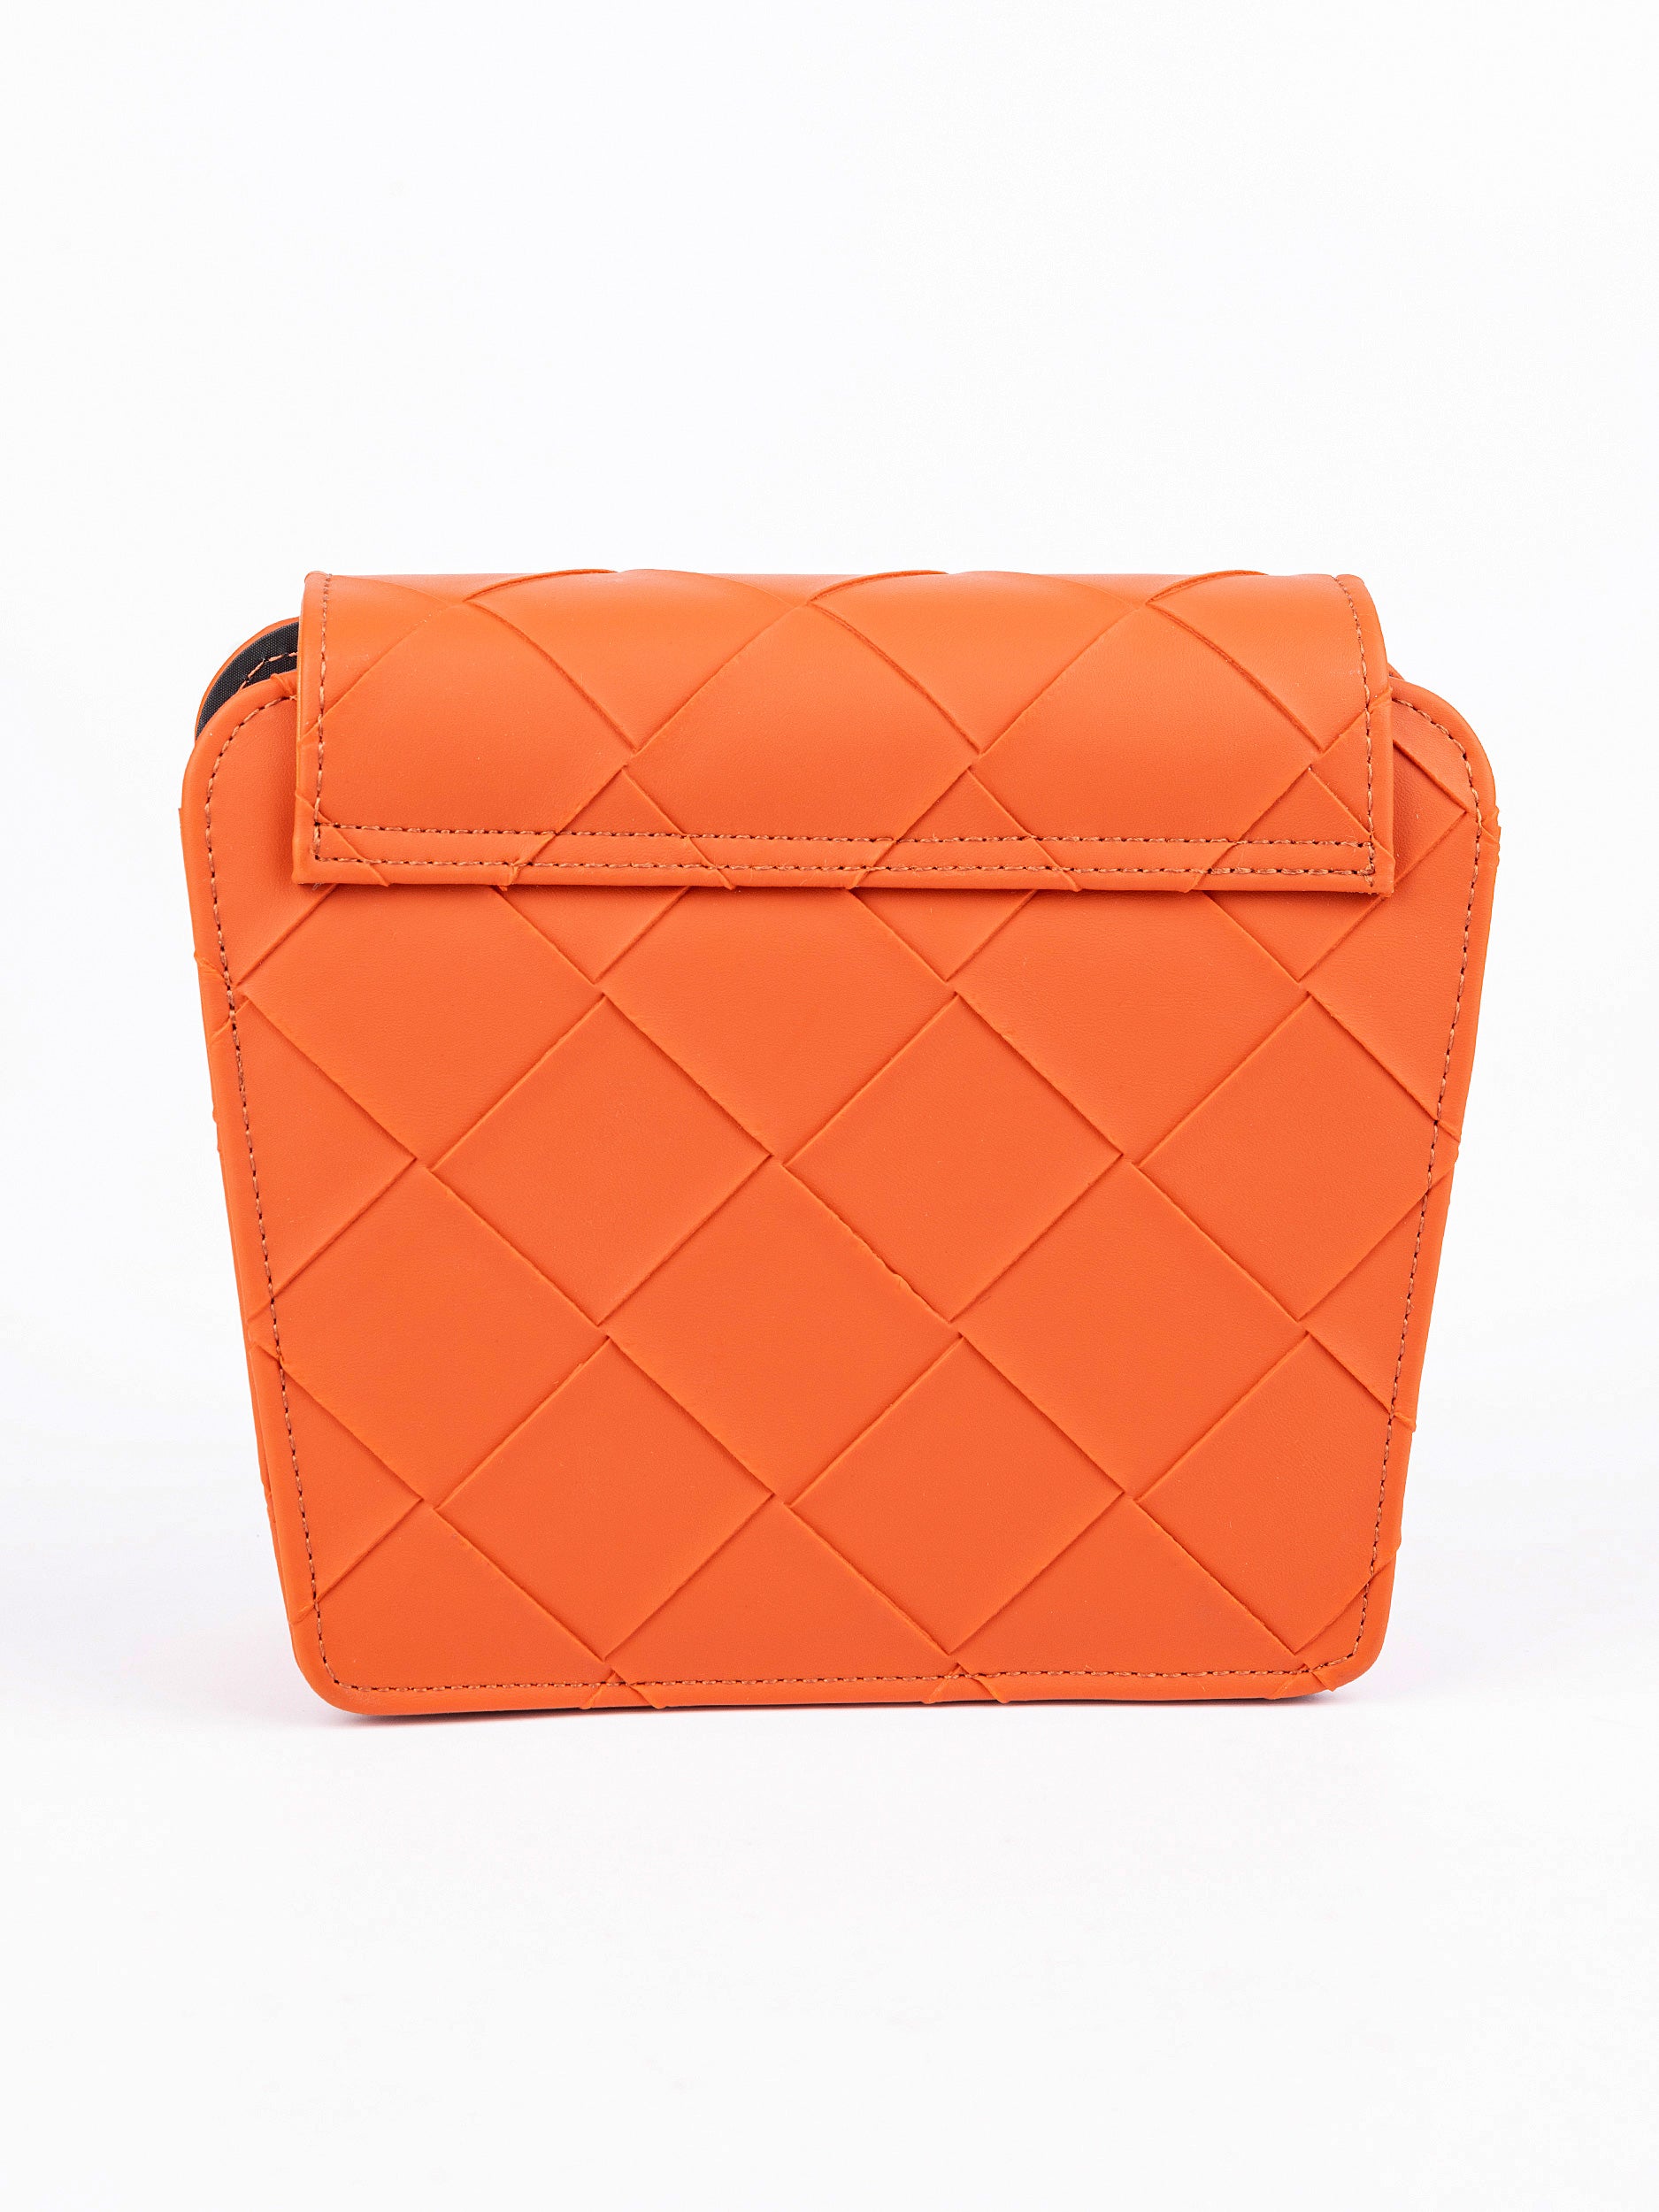 criss-cross-pattern-handbag